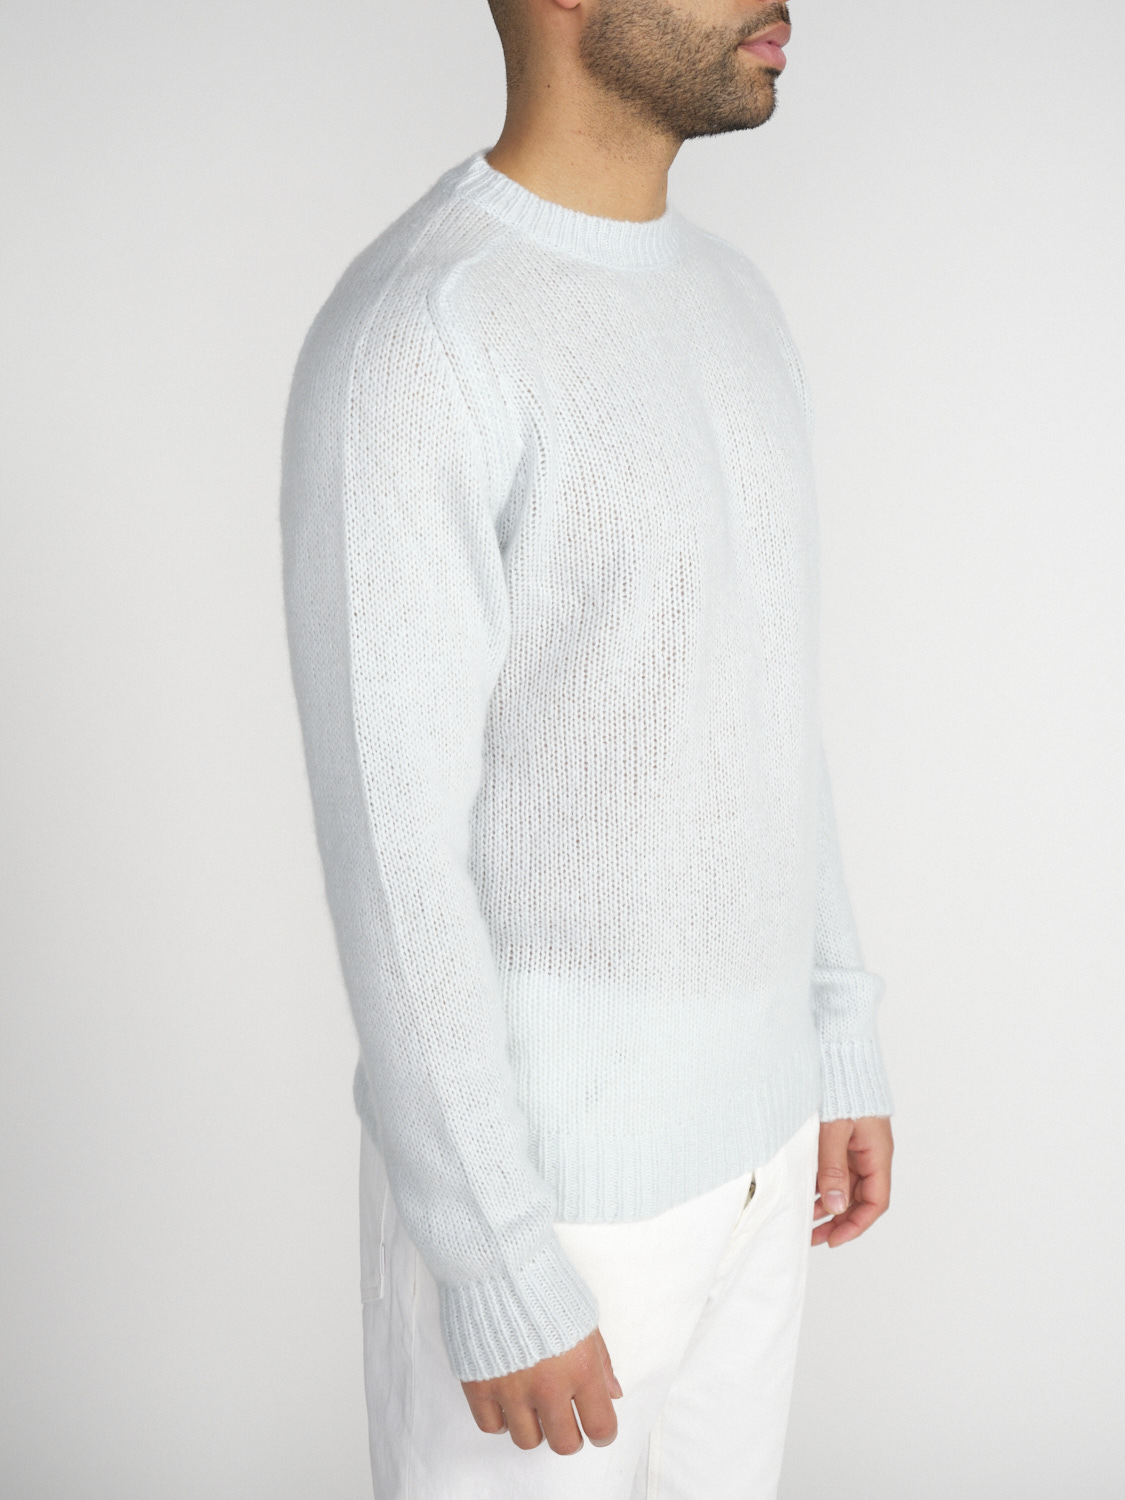 Stephan Boya Boya Leo - Lightweight knitted sweater in cashmere   mint S